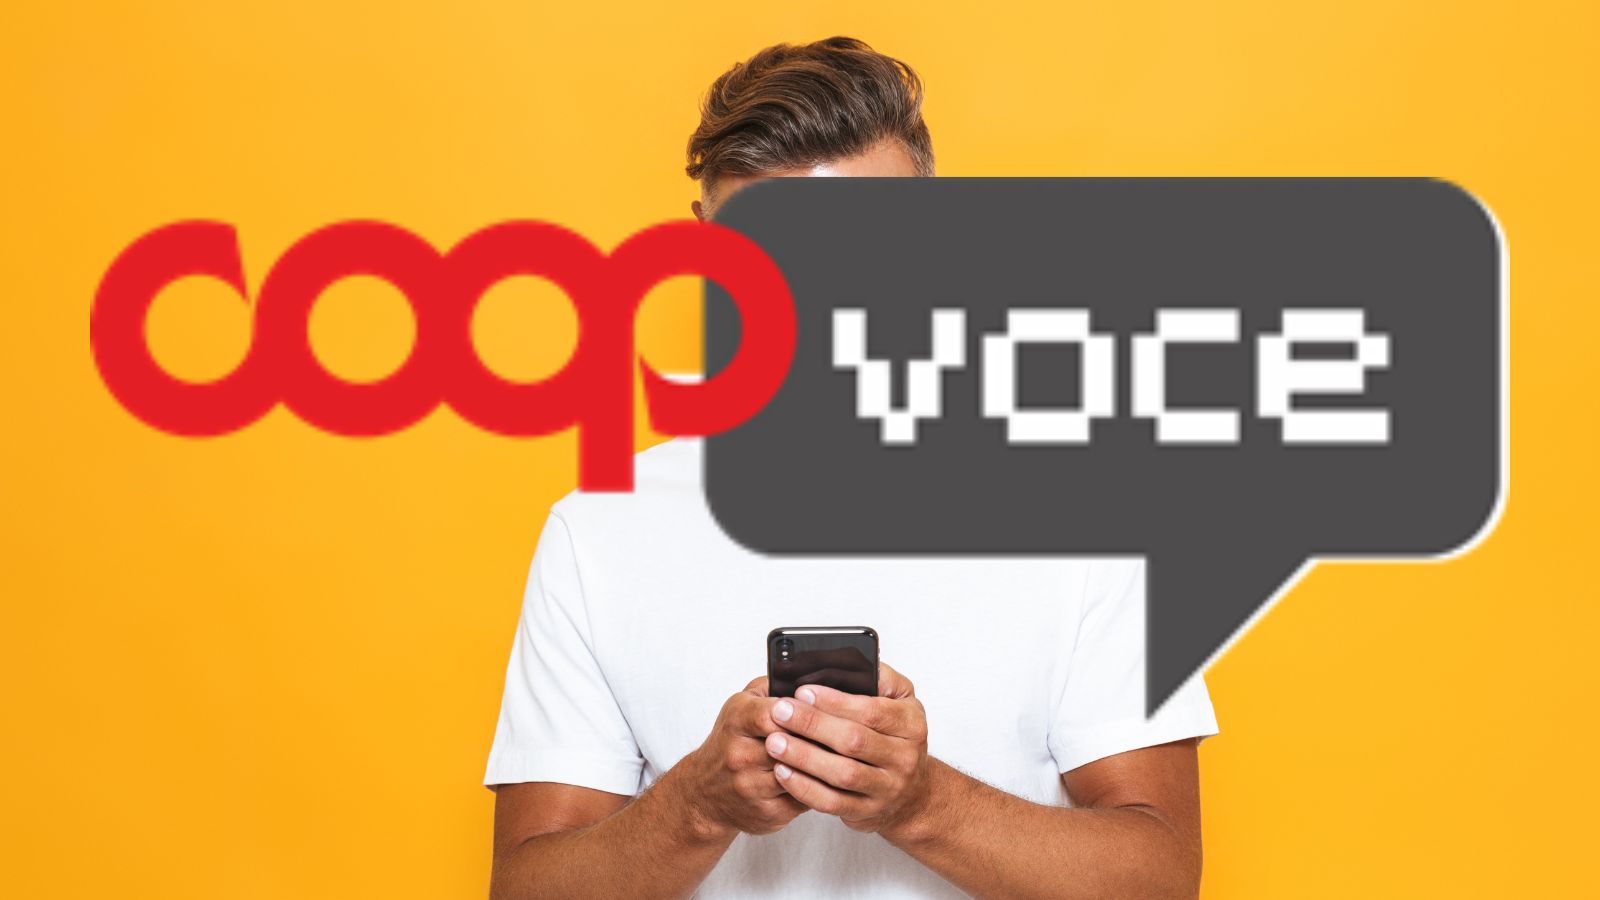 CoopVoce distrugge Vodafone con la EVO 180 da 180 giga